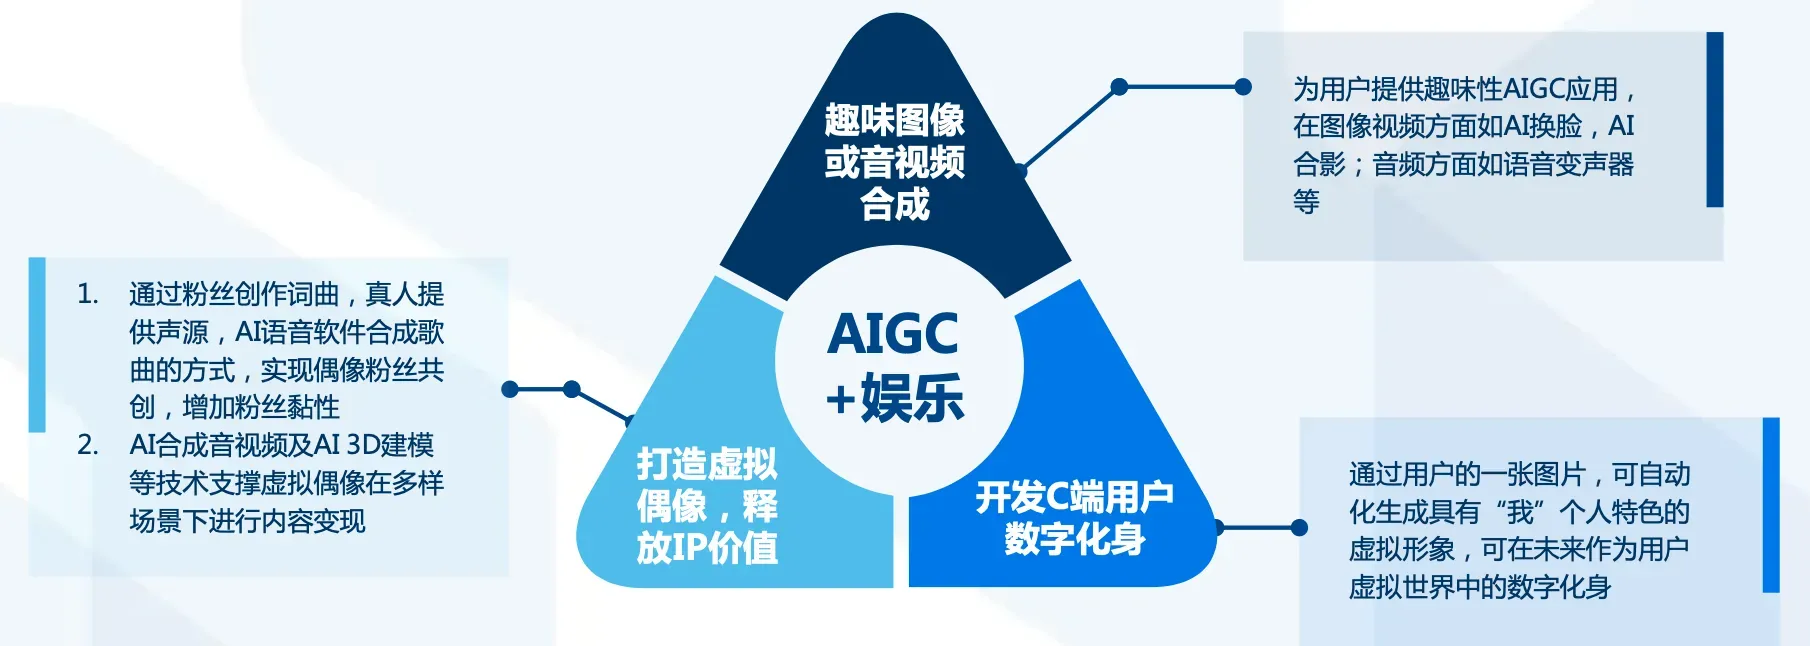 AIGC在娱乐领域也有诸多赋能点，有助于进一步提升产业空间